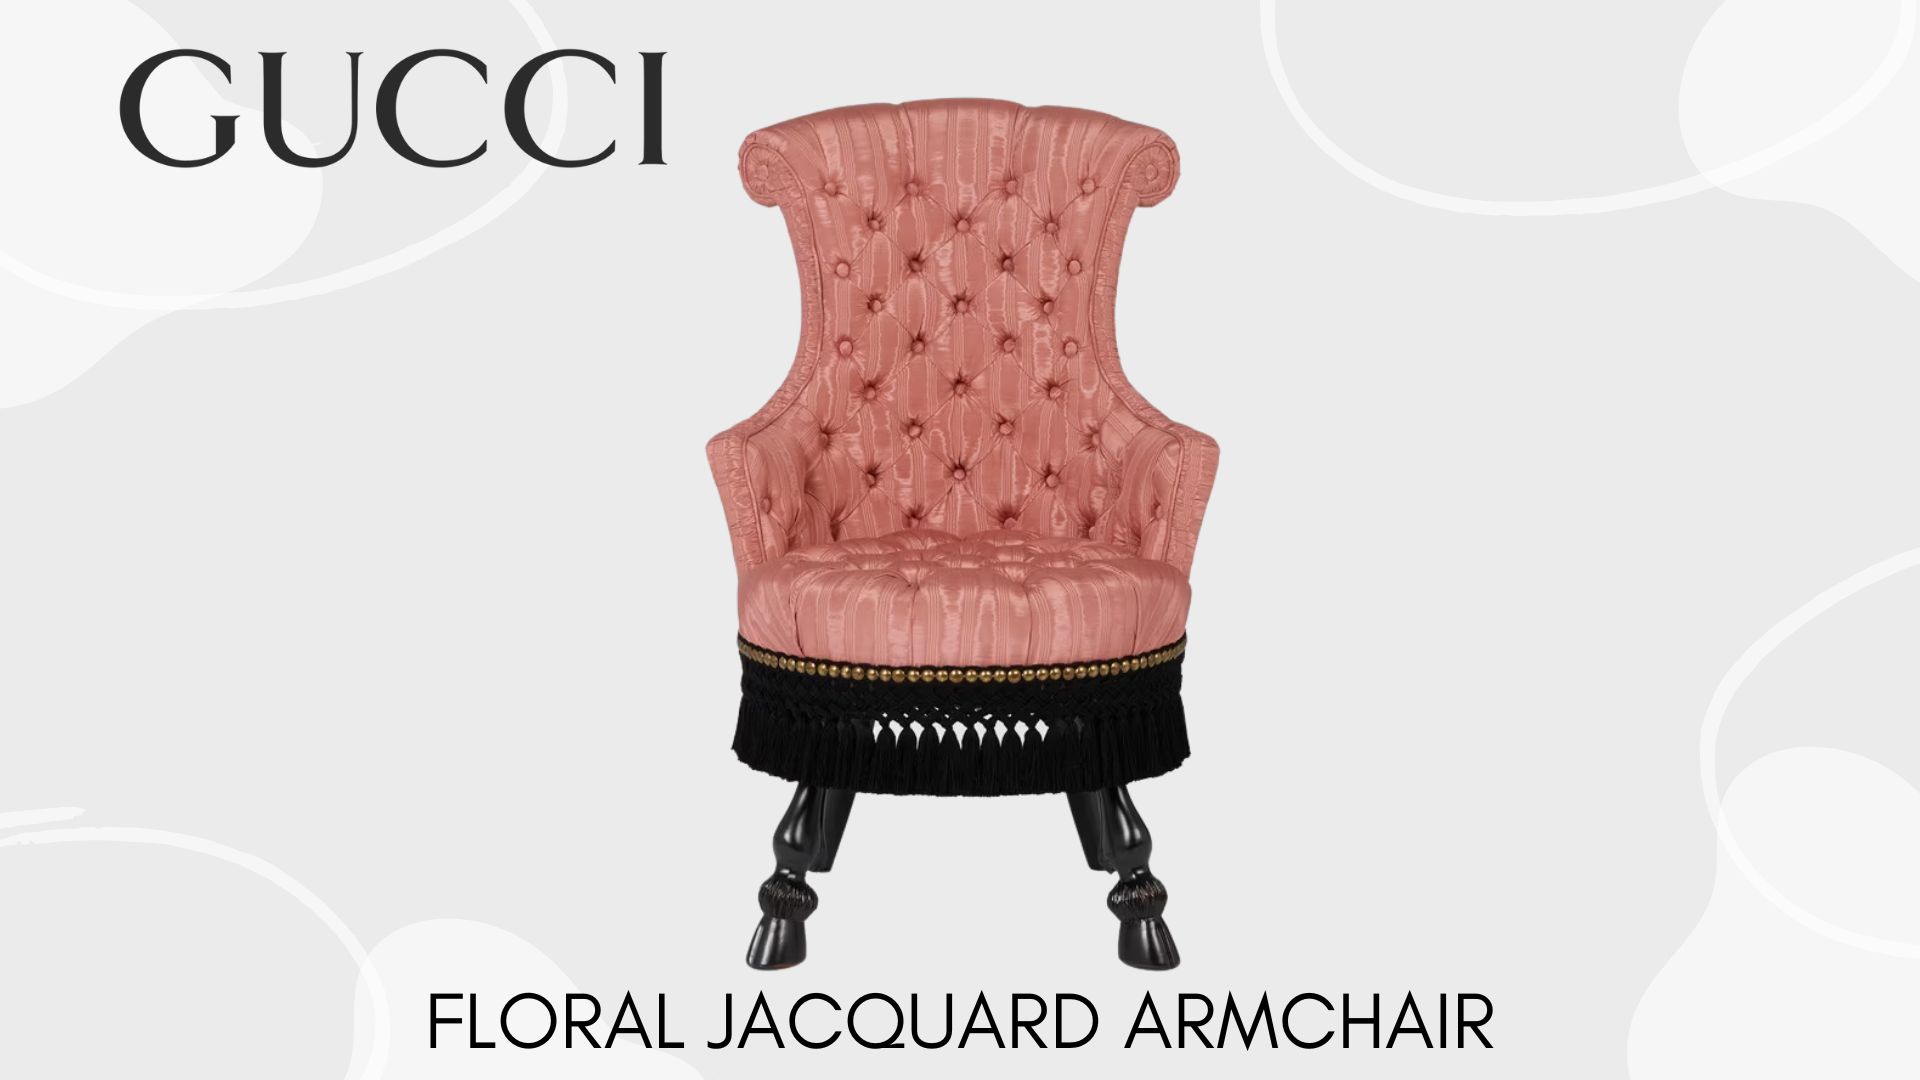 รวมแบรนด์หรู กับไลน์ Furniture และของตกแต่งบ้าน ที่หรูไม่แพ้งานกูตูบนรันเวย์ Floral Jacquard Armchair